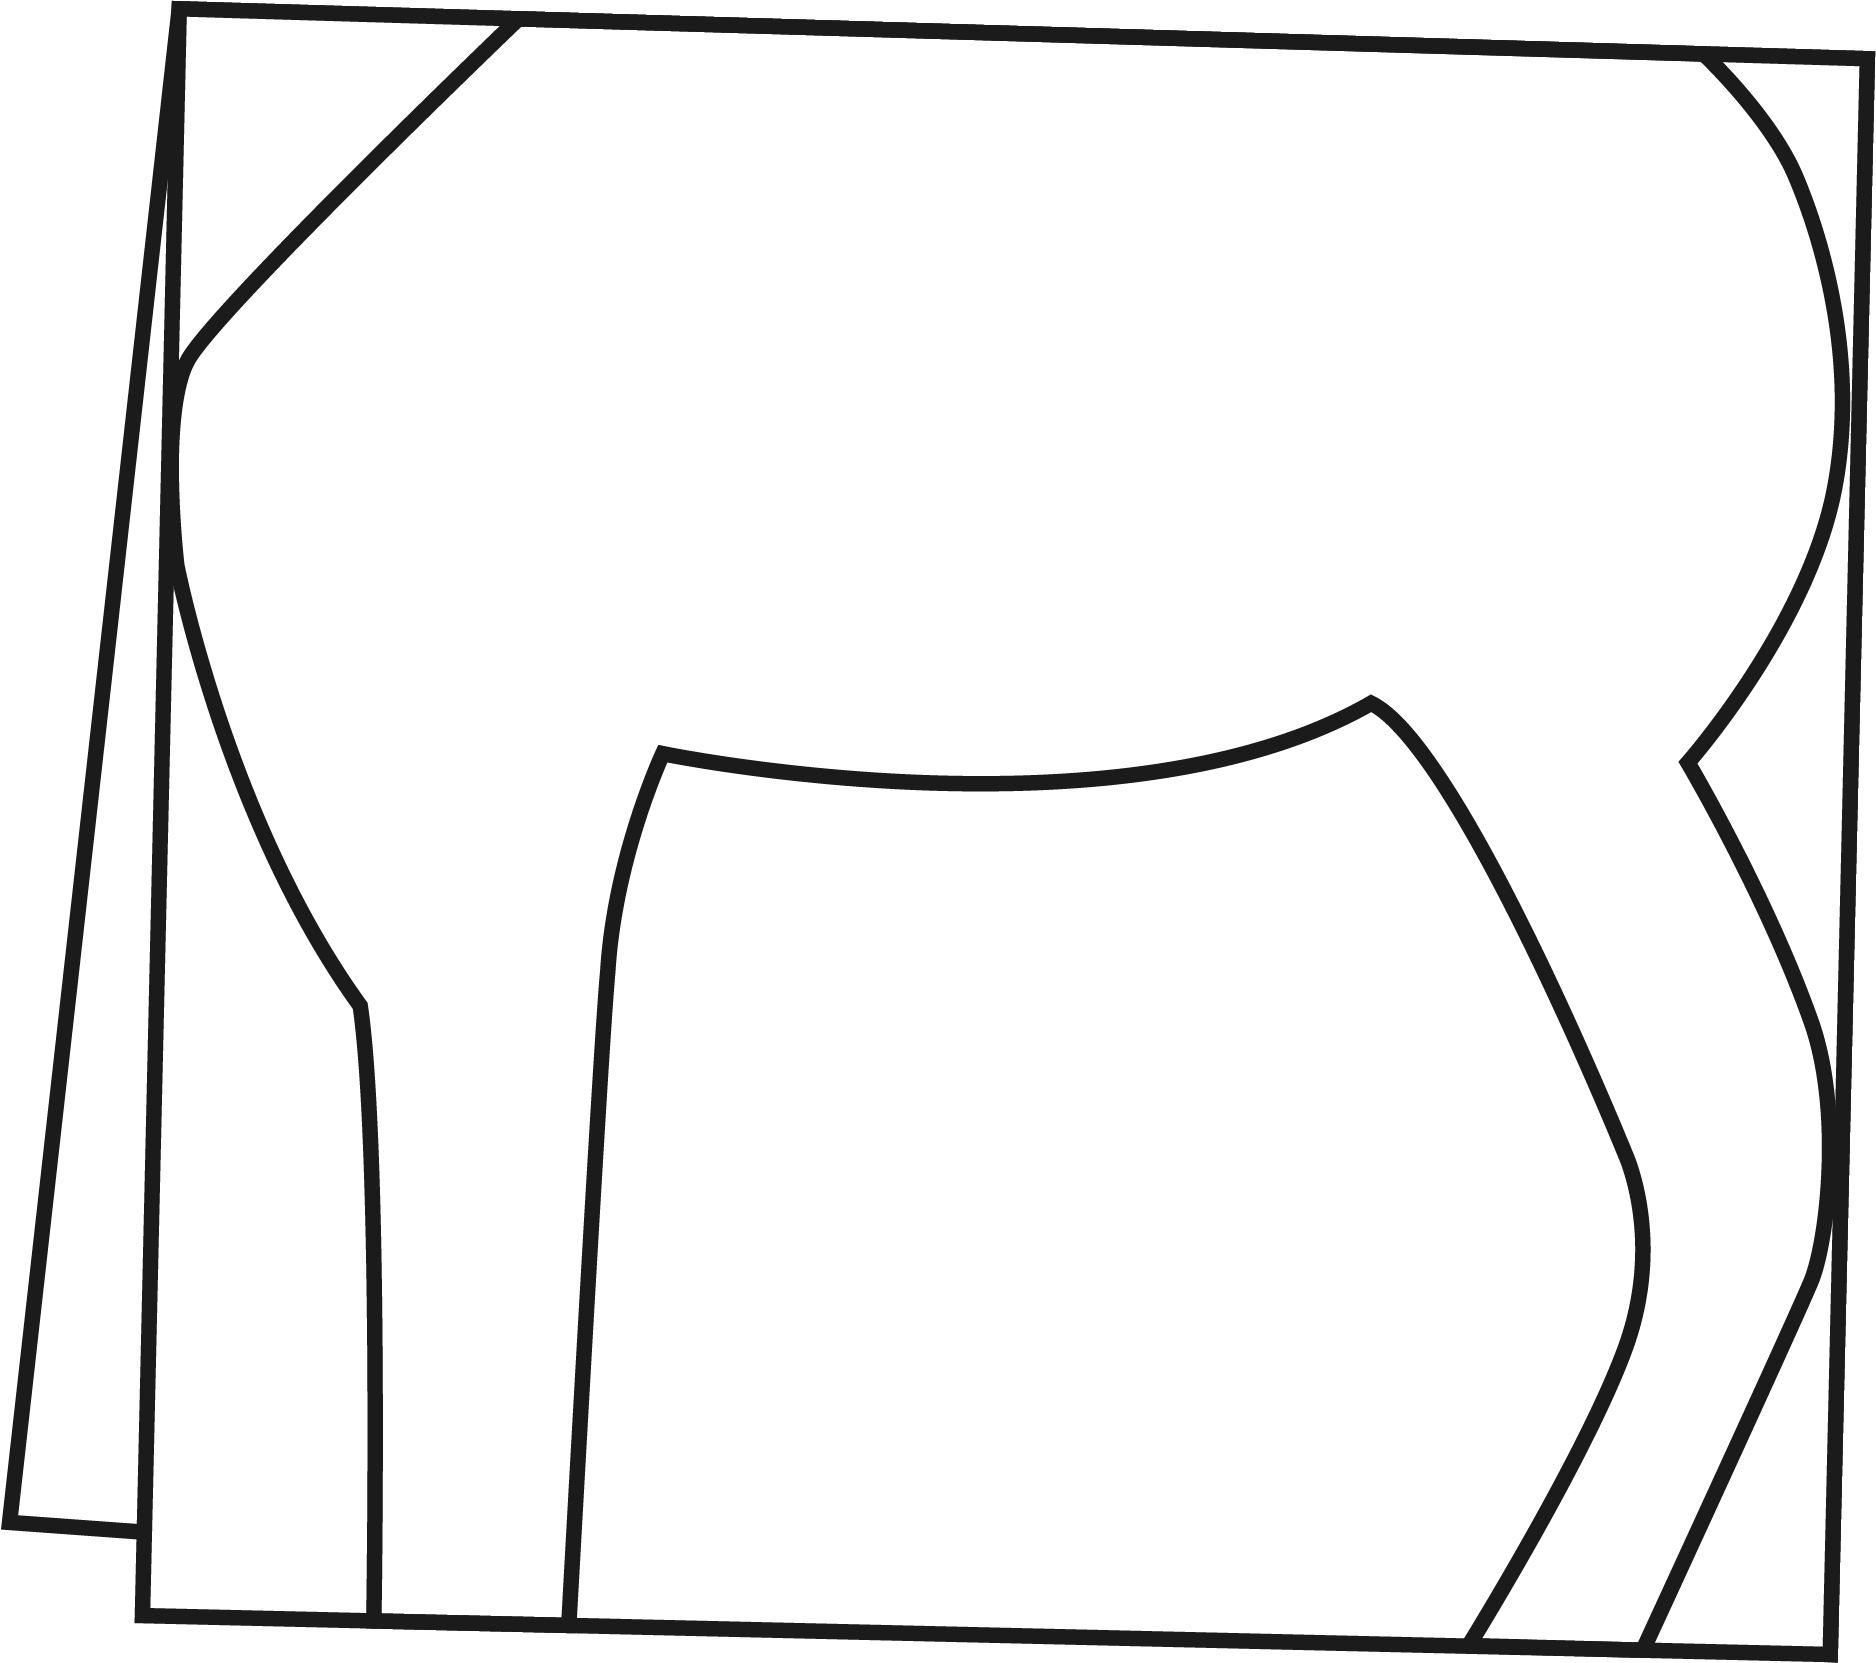 硬纸对折,画出斑马的躯干和四条腿